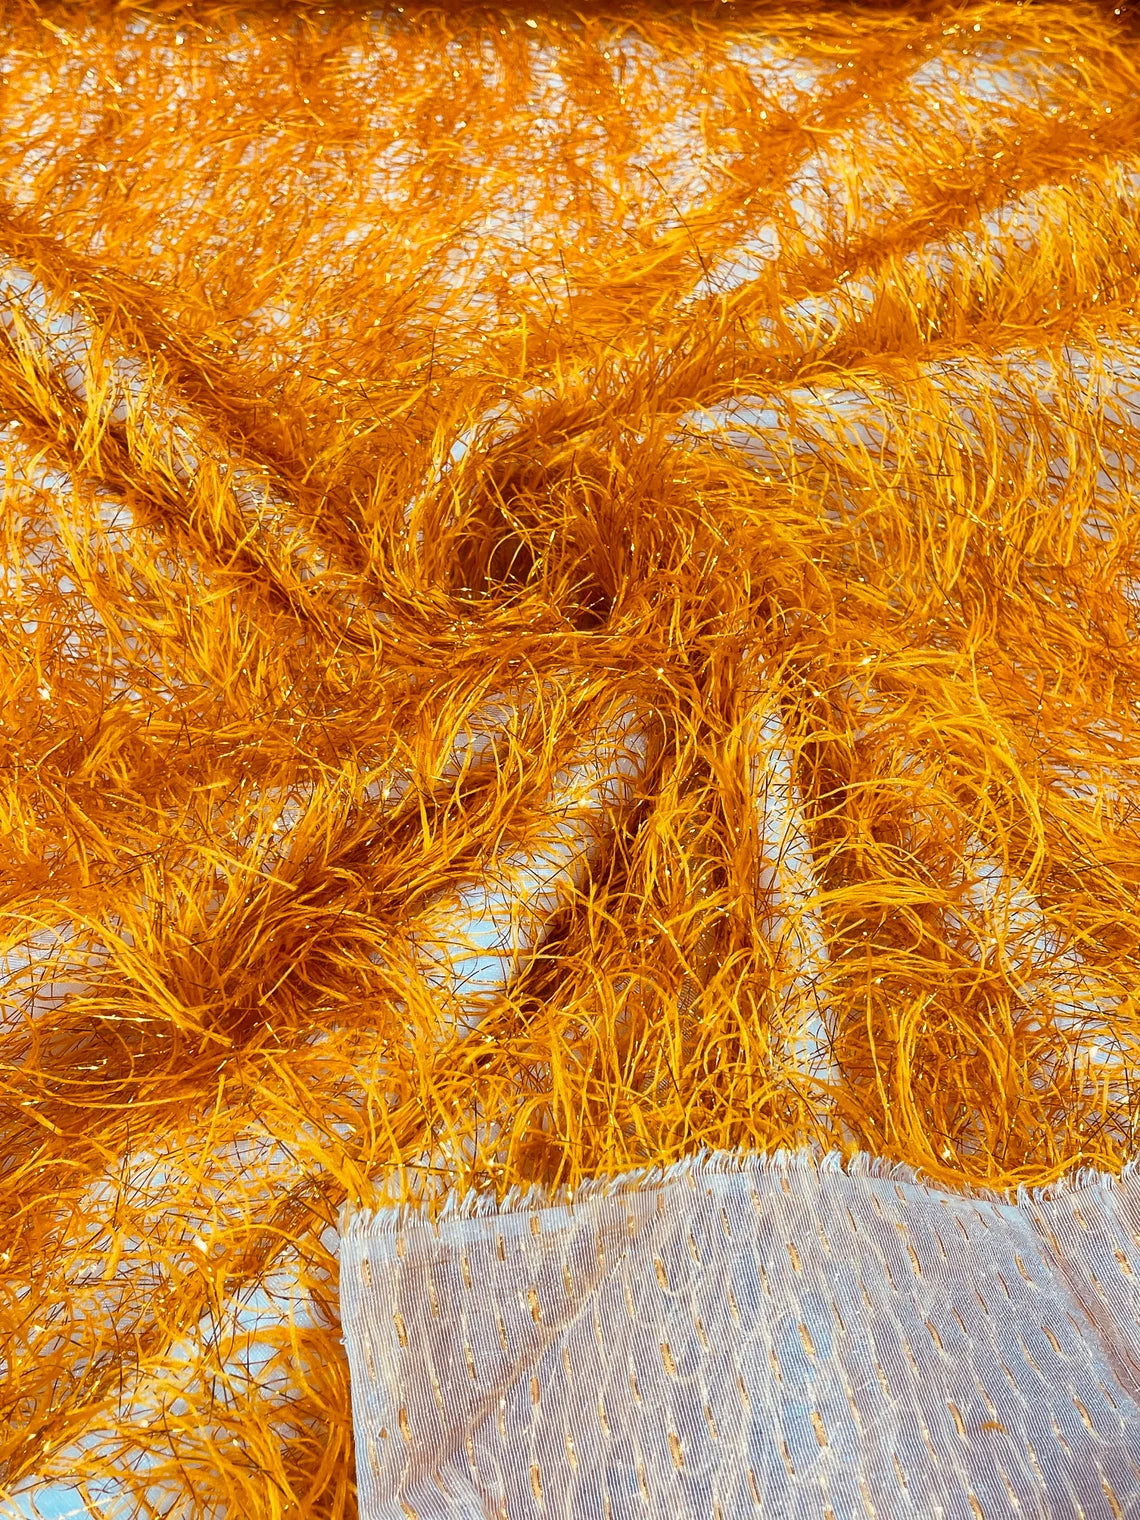 Eyelash Fringe Metallic Fabric - Orange - Hanging Fringe Metallic Decorative Crafts Dress Fabric By Yard